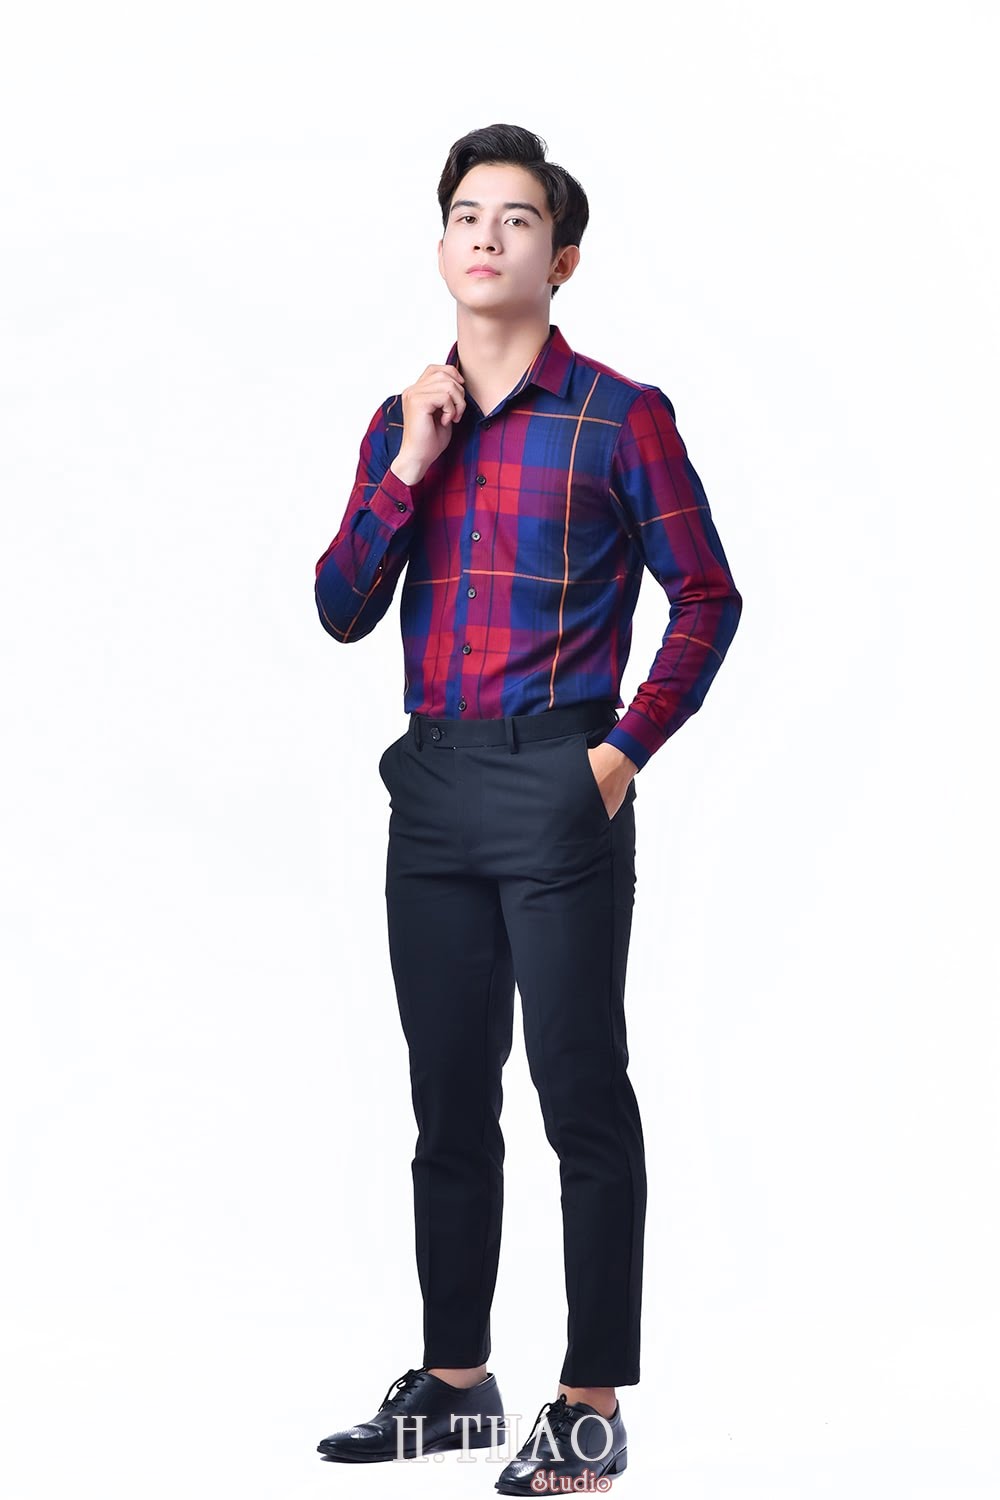 Anh 48 min - #4 concept chụp ảnh sản phẩm quần áo bán hàng đẹp - HThao Studio